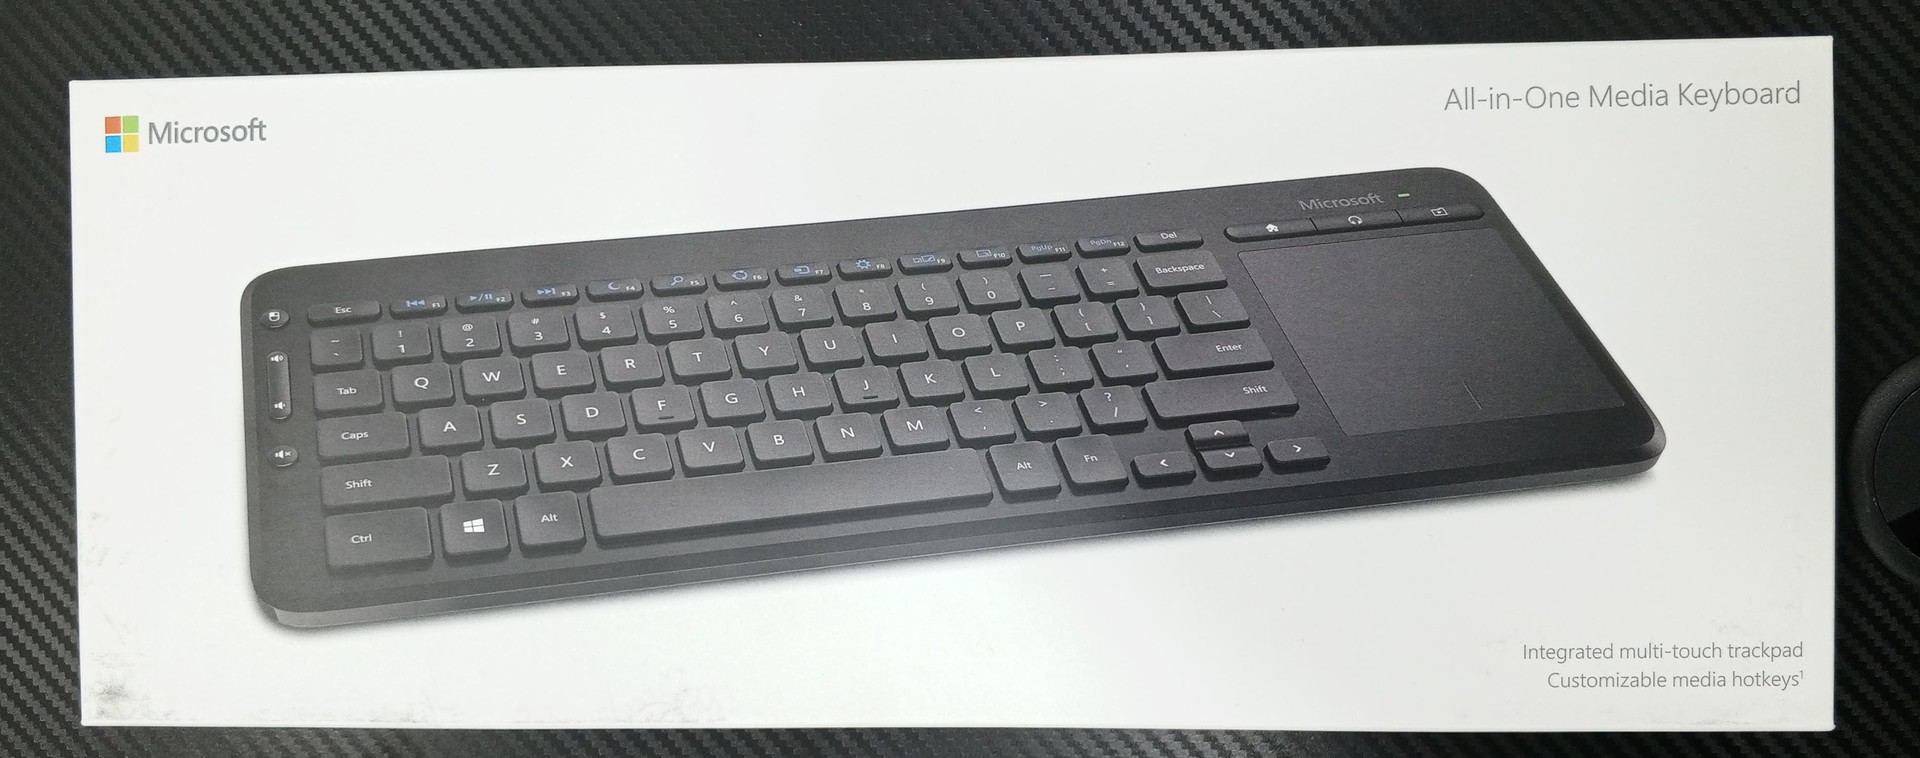 computadoras y laptops - Teclado Microsoft All-in-One Media Keyboard